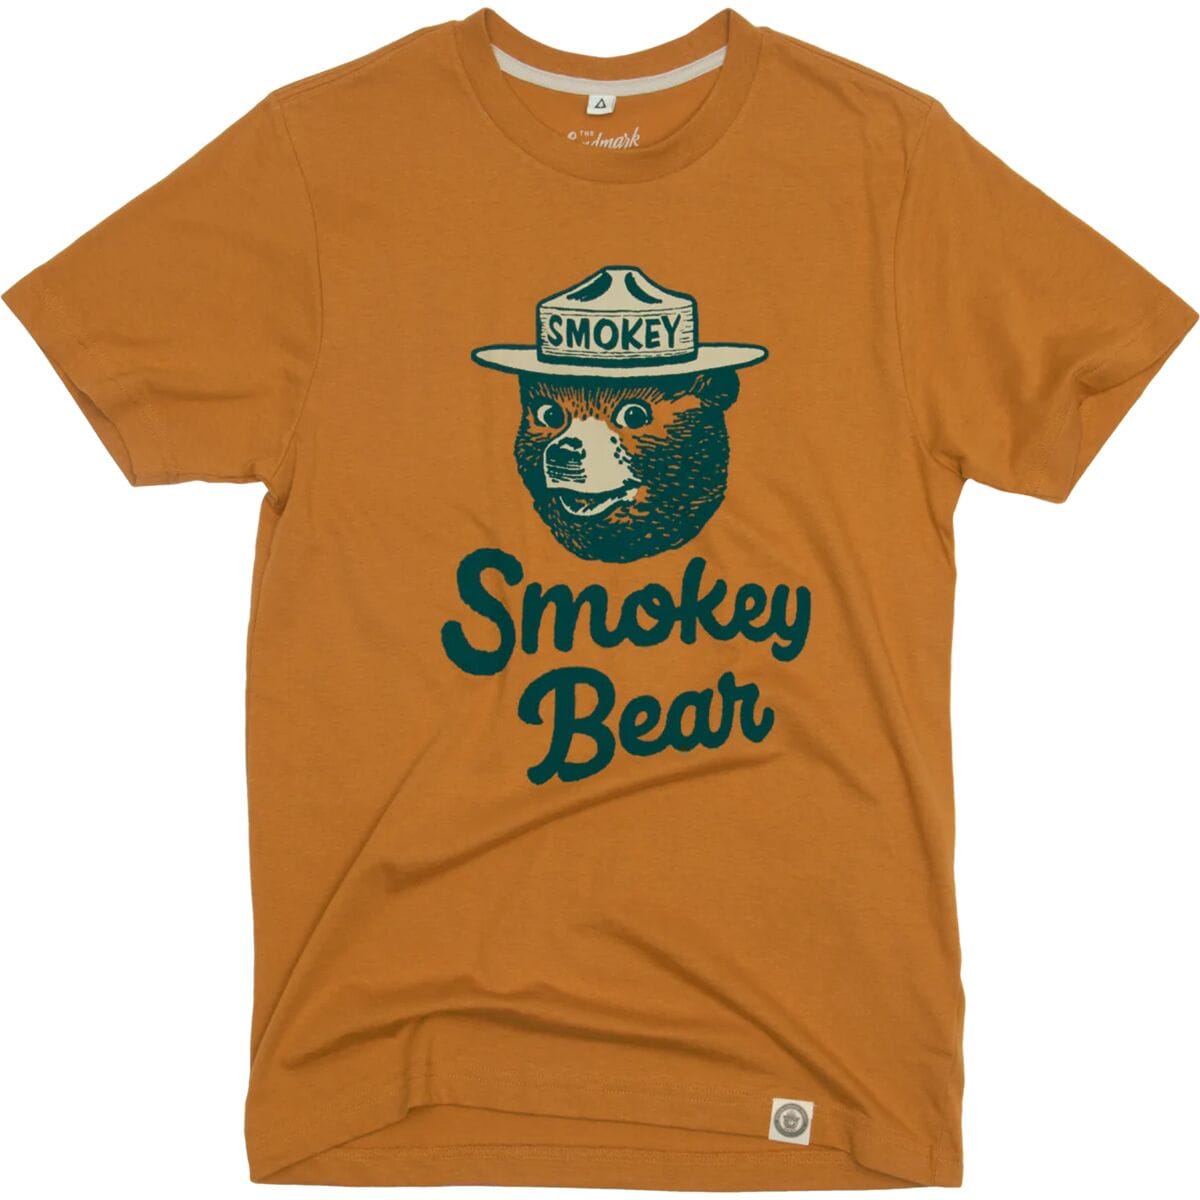 Smokey Signature T-Shirt Landmark Project